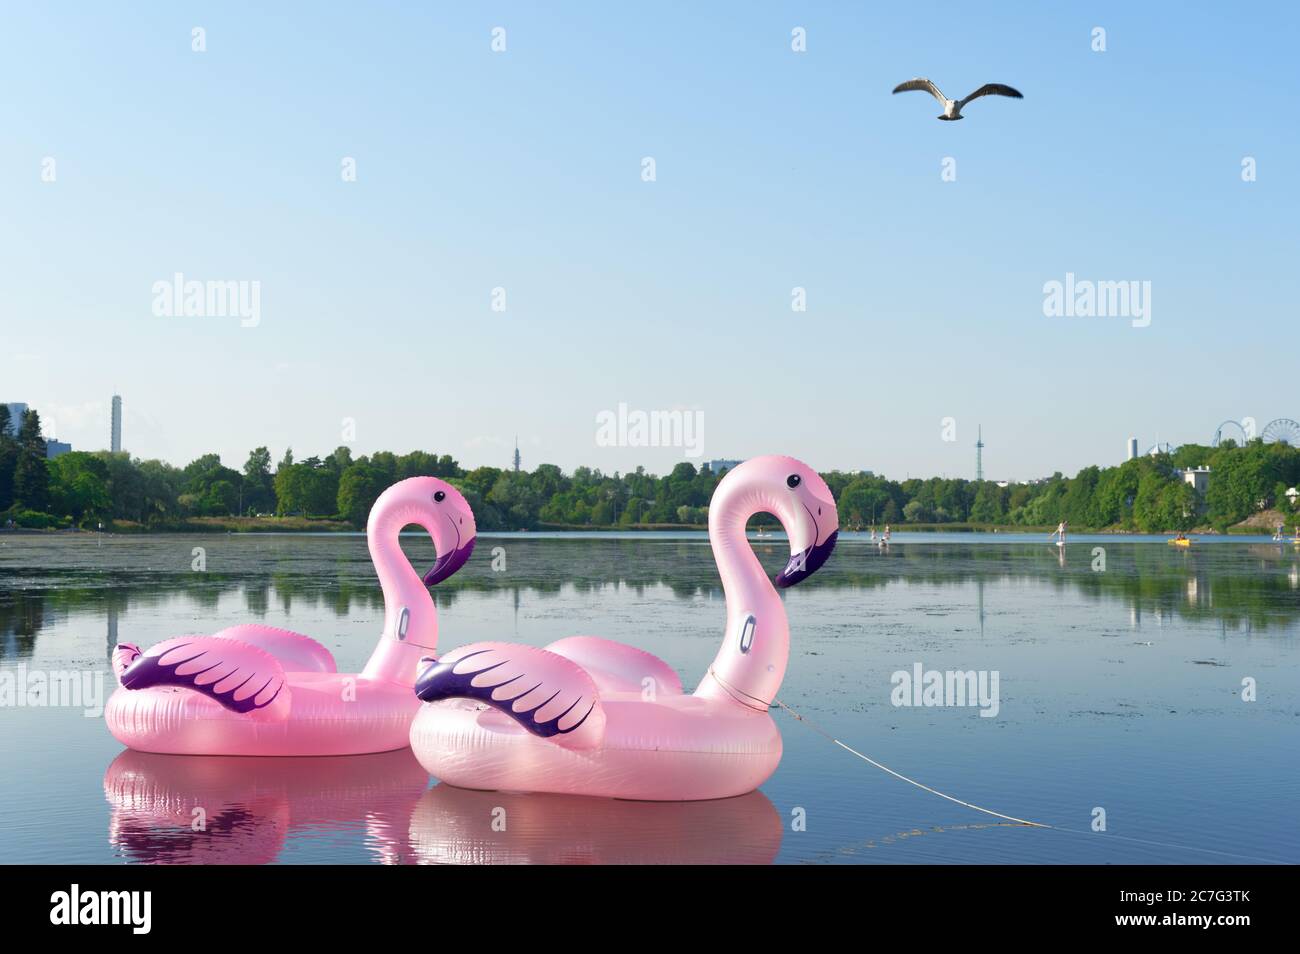 Flamant rose gonflable jouet flamant sur le lac dans le centre d'Helsinki, Finlande Banque D'Images